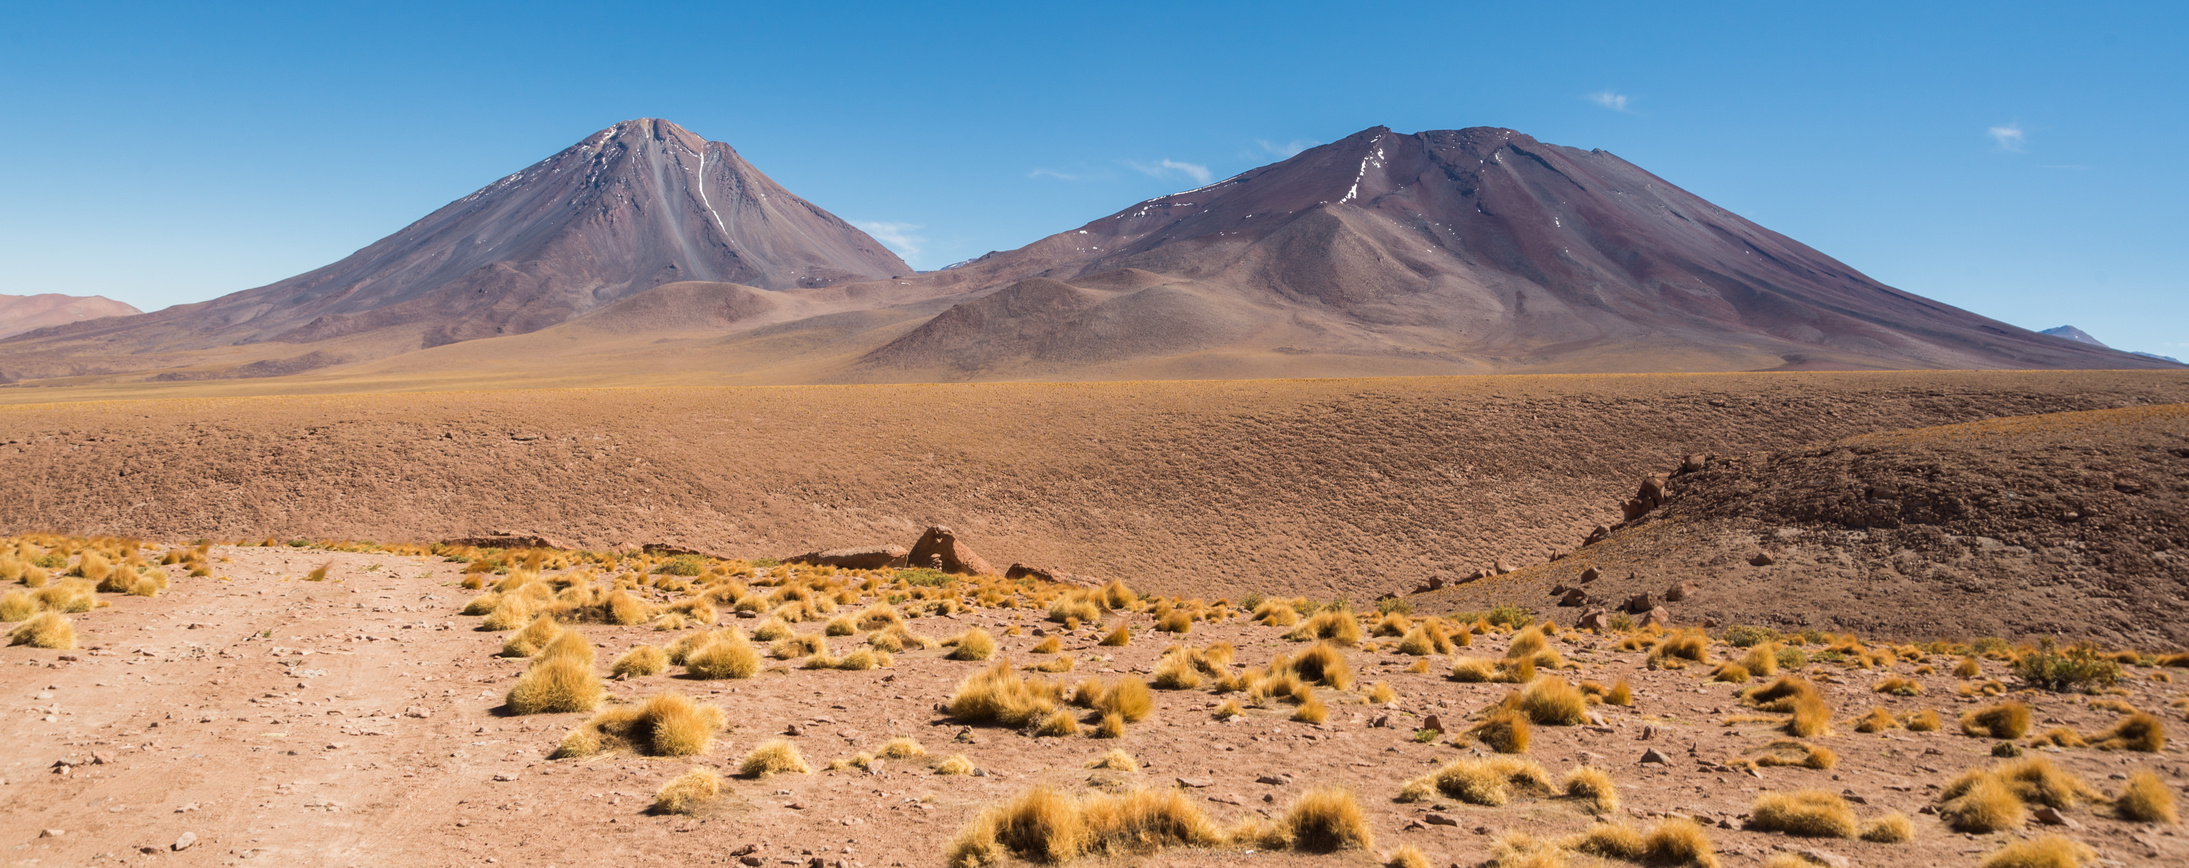 Le désert d’Atacama est, avec les Vallées Sèches de l’Antarctique, l’un des endroits les plus secs de la planète. © Rex Wholster, fotolia